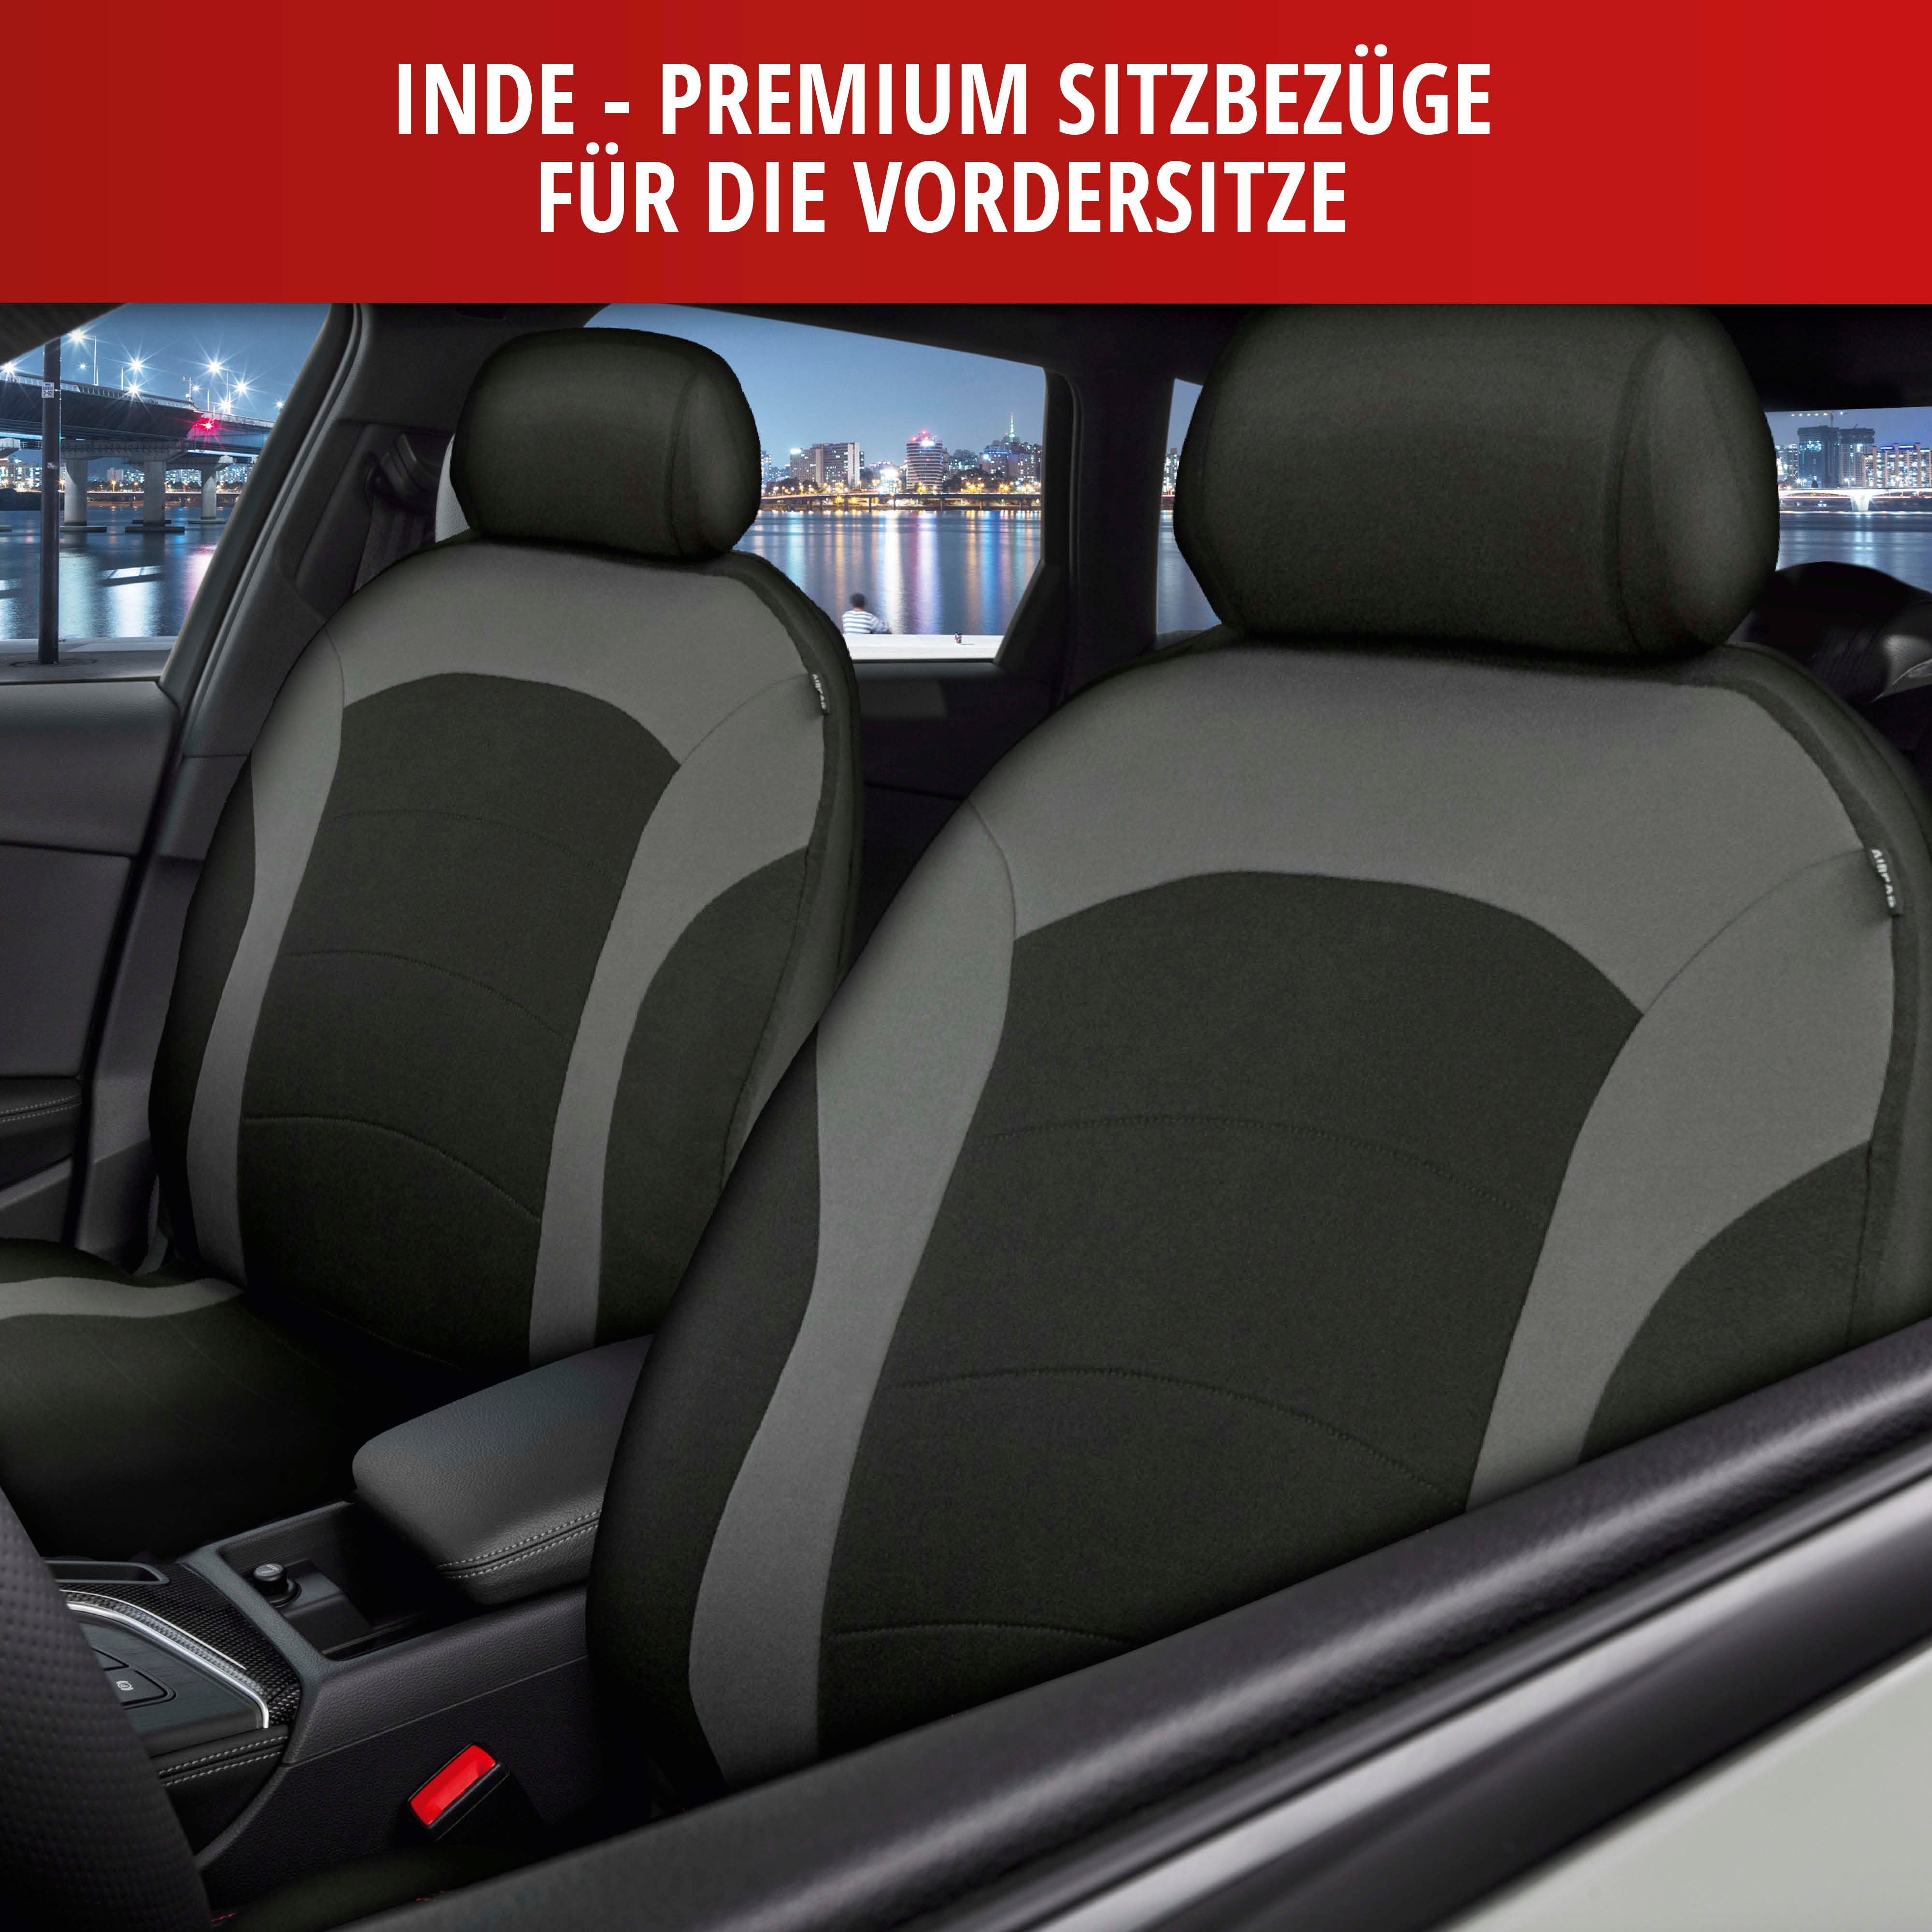 Autositzbezug ZIPP-IT Premium Inde, PKW-Schonbezüge für 2 Vordersitze mit Reißverschluss-System schwarz/grau